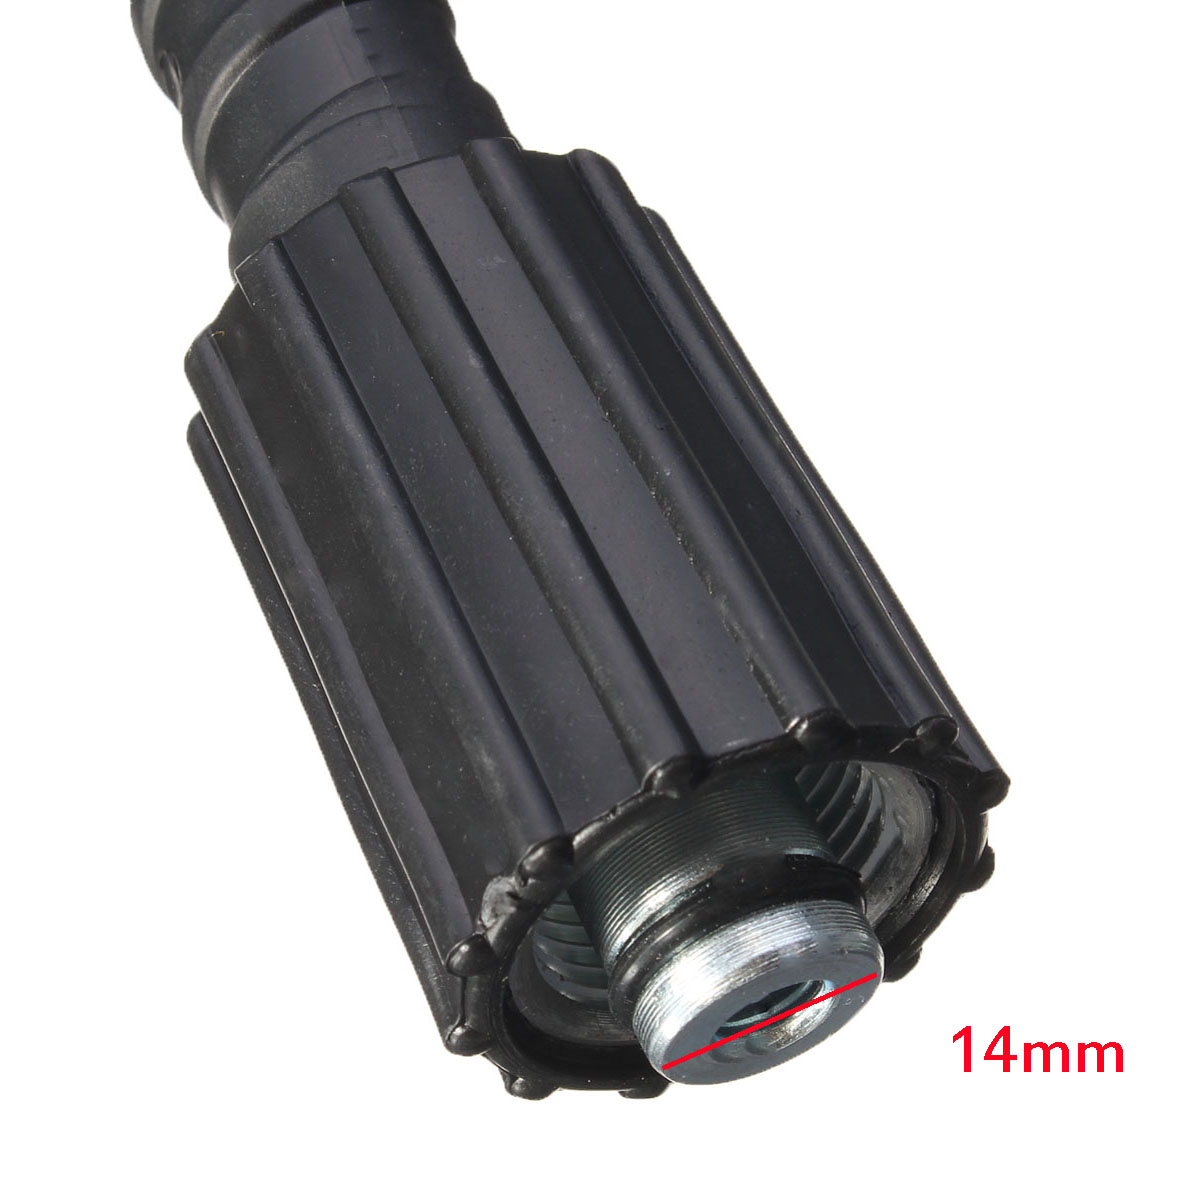 5M-5800PSI-Pressure-Washer-Hose-22mm-Pump-End-Fitting-for-Karcher-K2-Cleaner-1299990-2